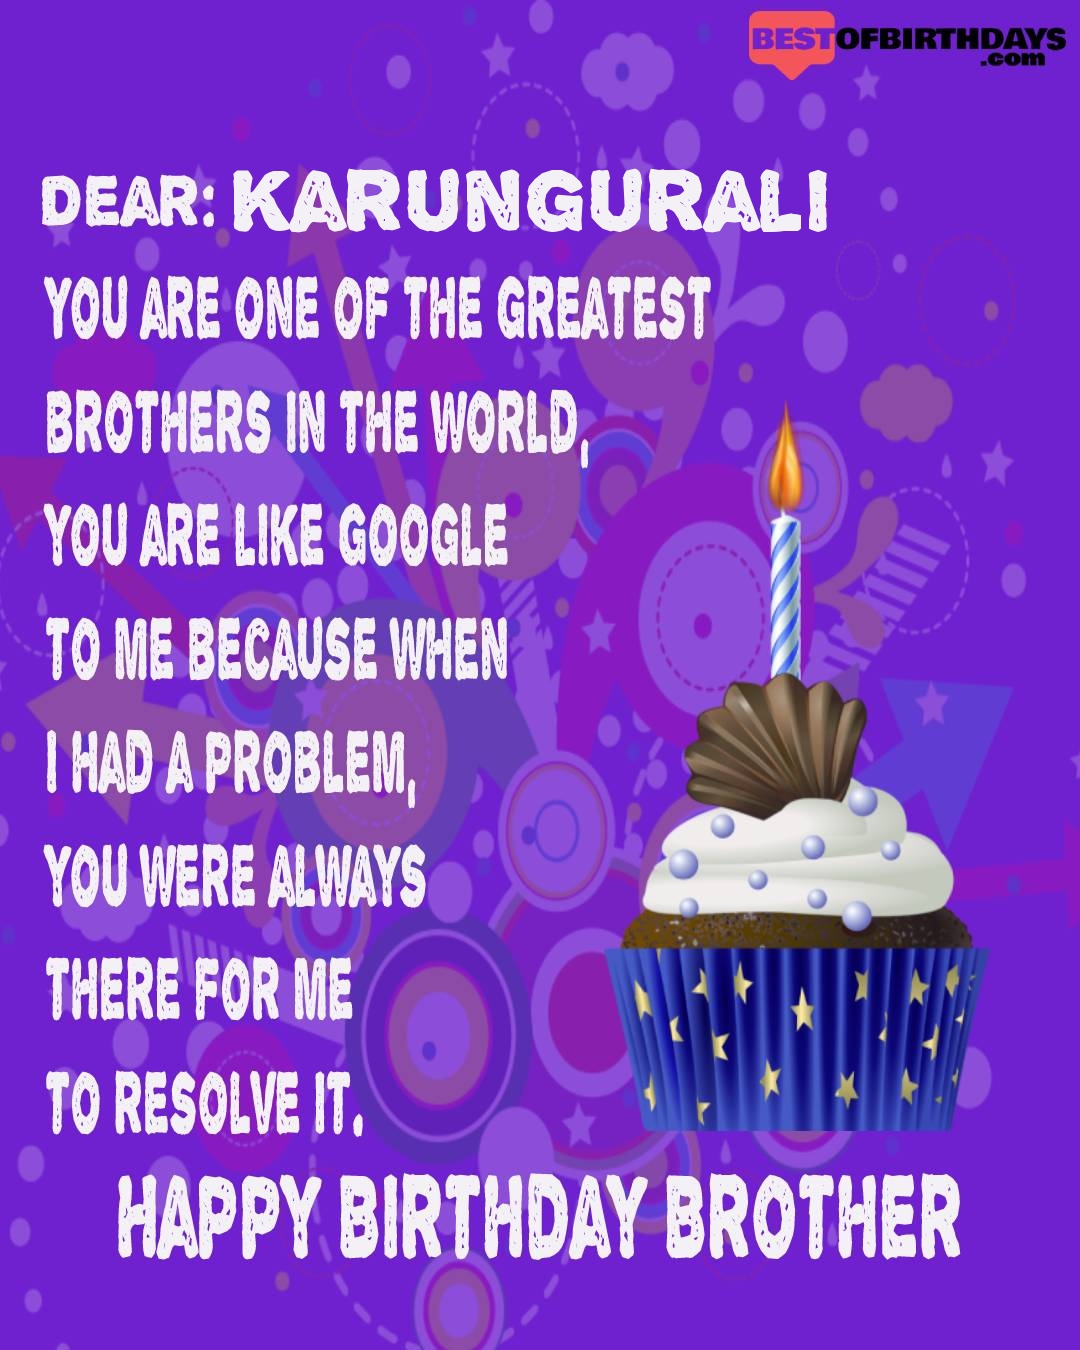 Happy birthday karungurali bhai brother bro